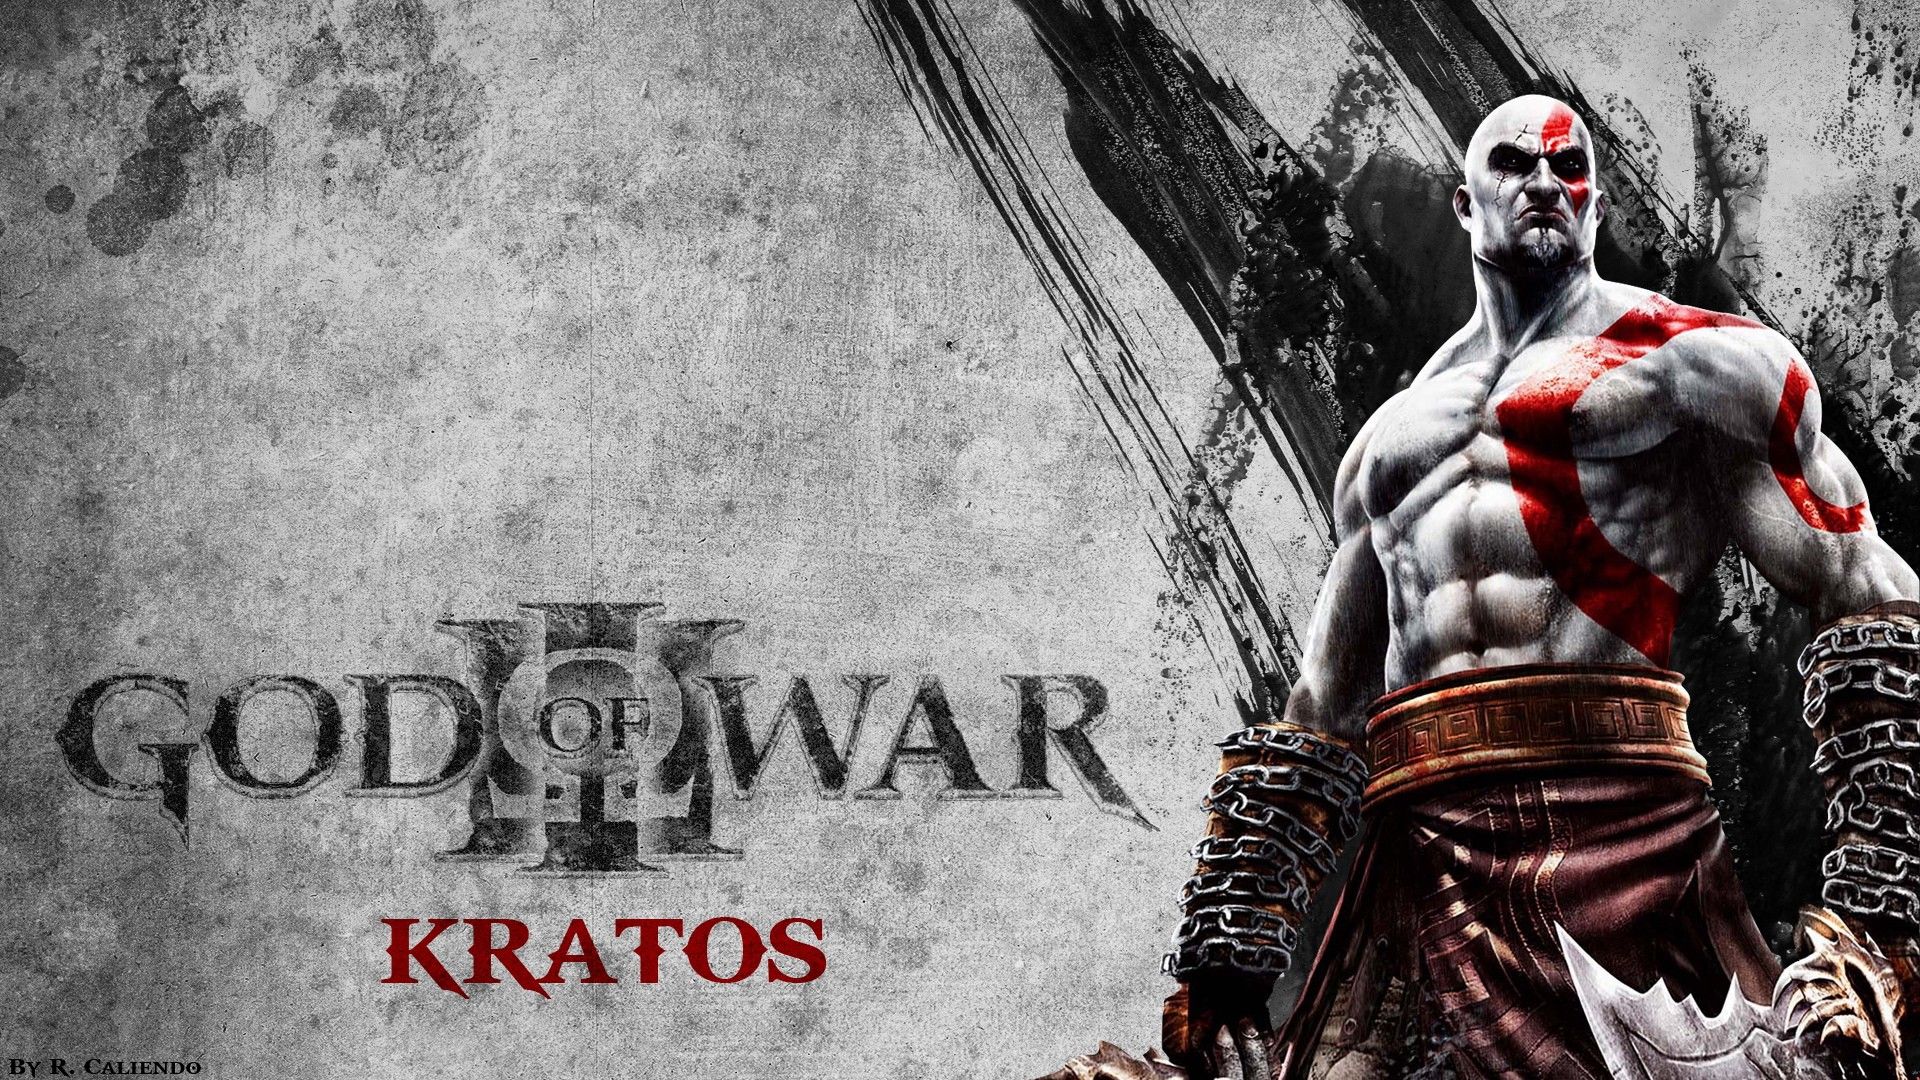 Kratos in God of War - typta.com